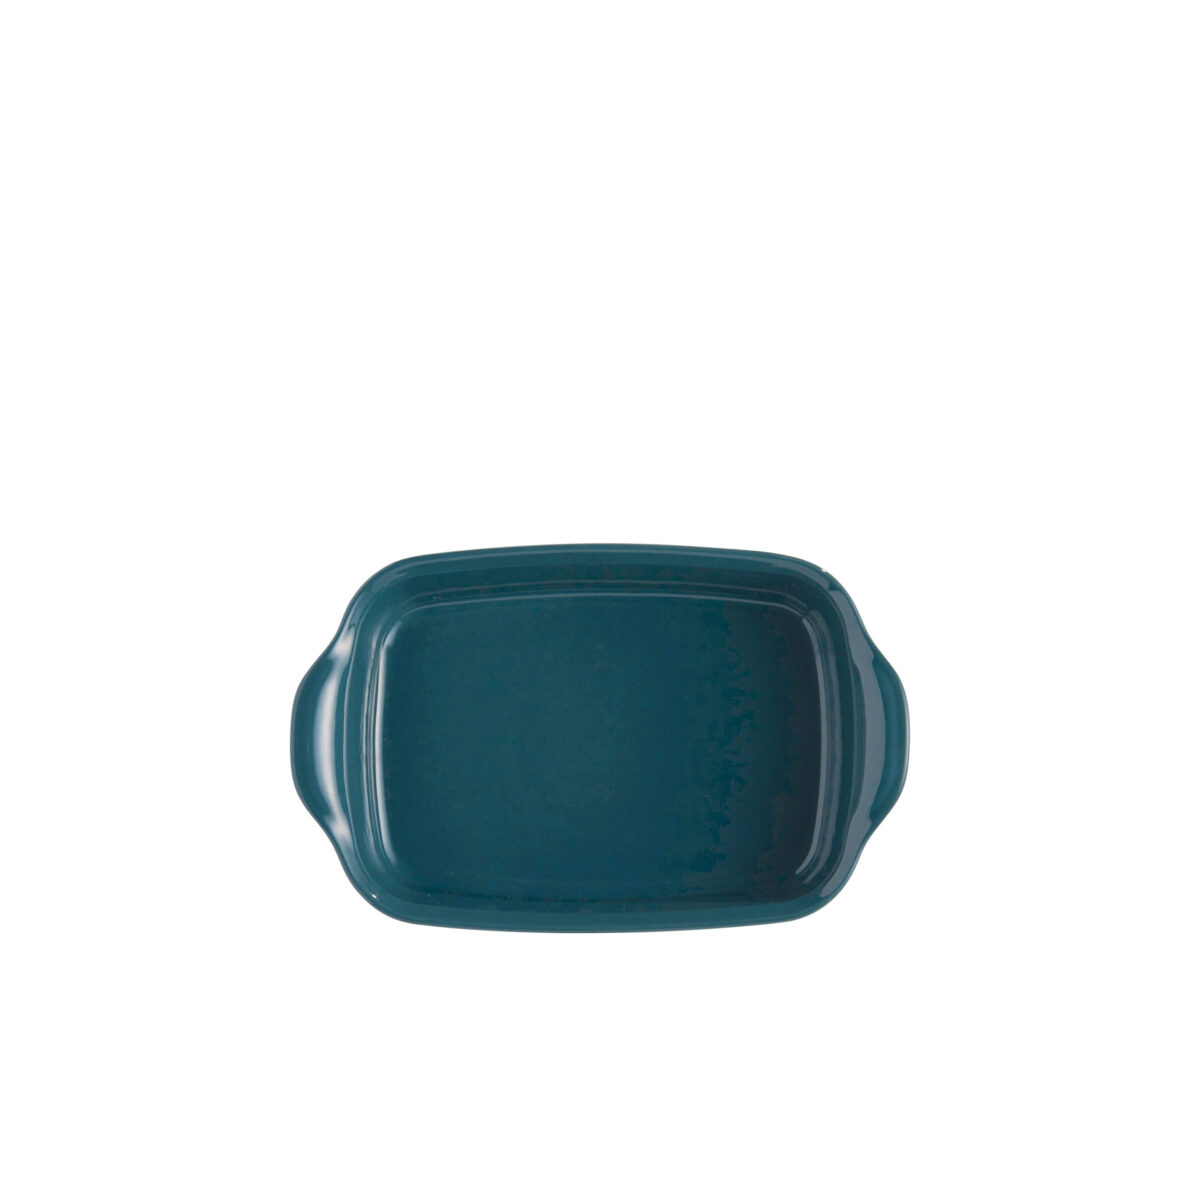 Керамична тава EMILE HENRY INDIVIDUAL OVEN DISH - 22х15 см, цвят синьо-зелен